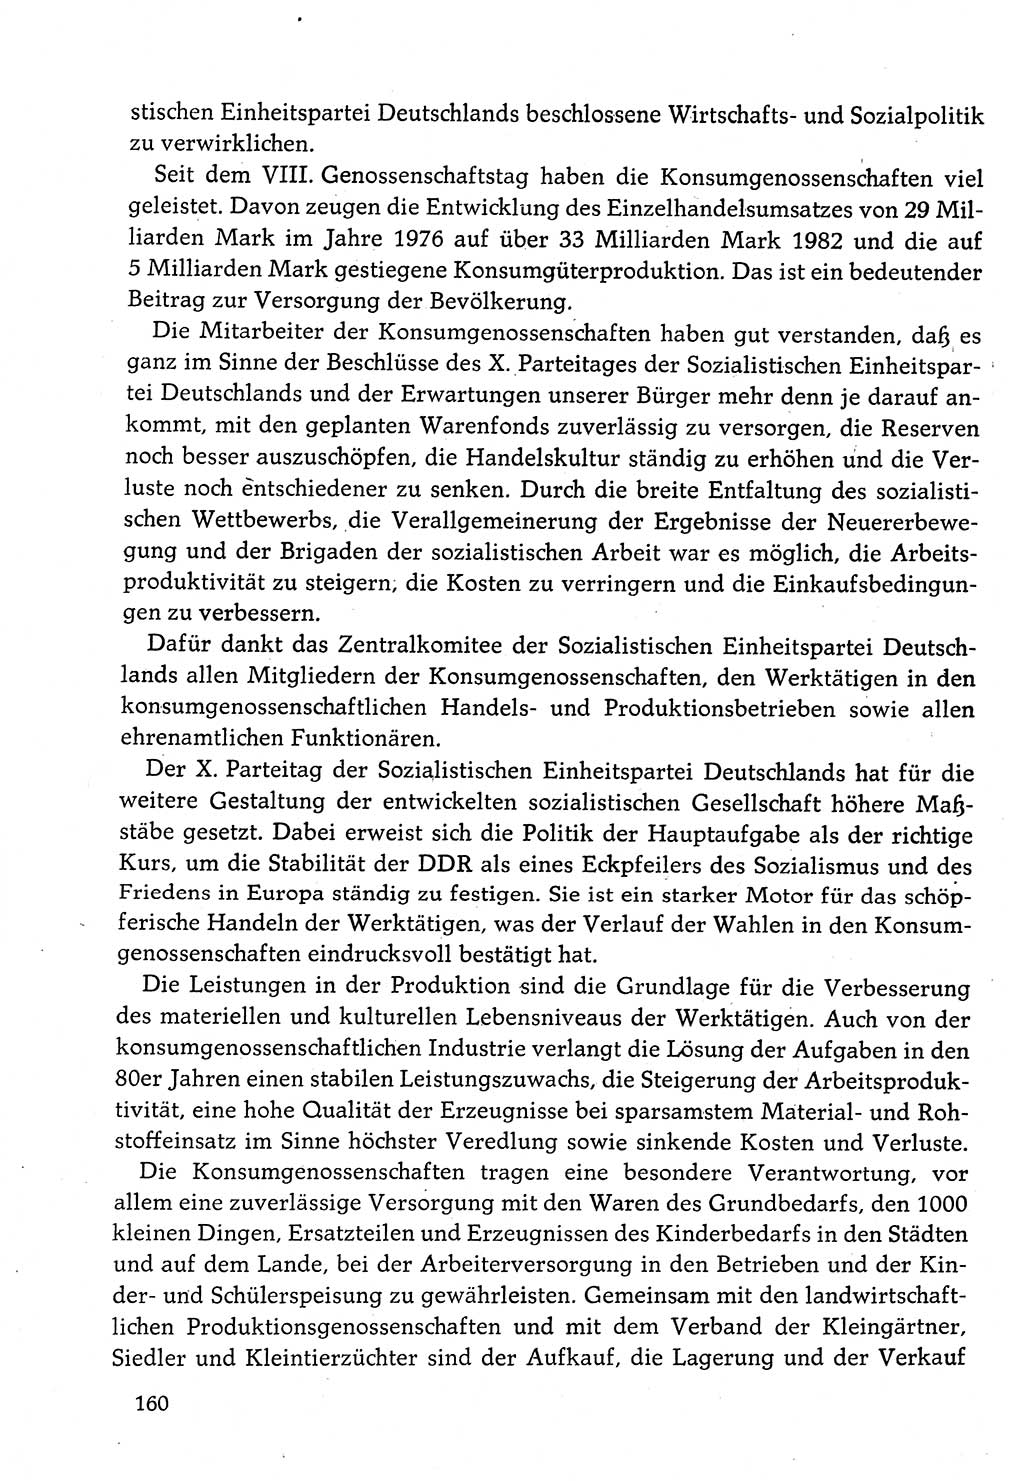 Dokumente der Sozialistischen Einheitspartei Deutschlands (SED) [Deutsche Demokratische Republik (DDR)] 1982-1983, Seite 160 (Dok. SED DDR 1982-1983, S. 160)